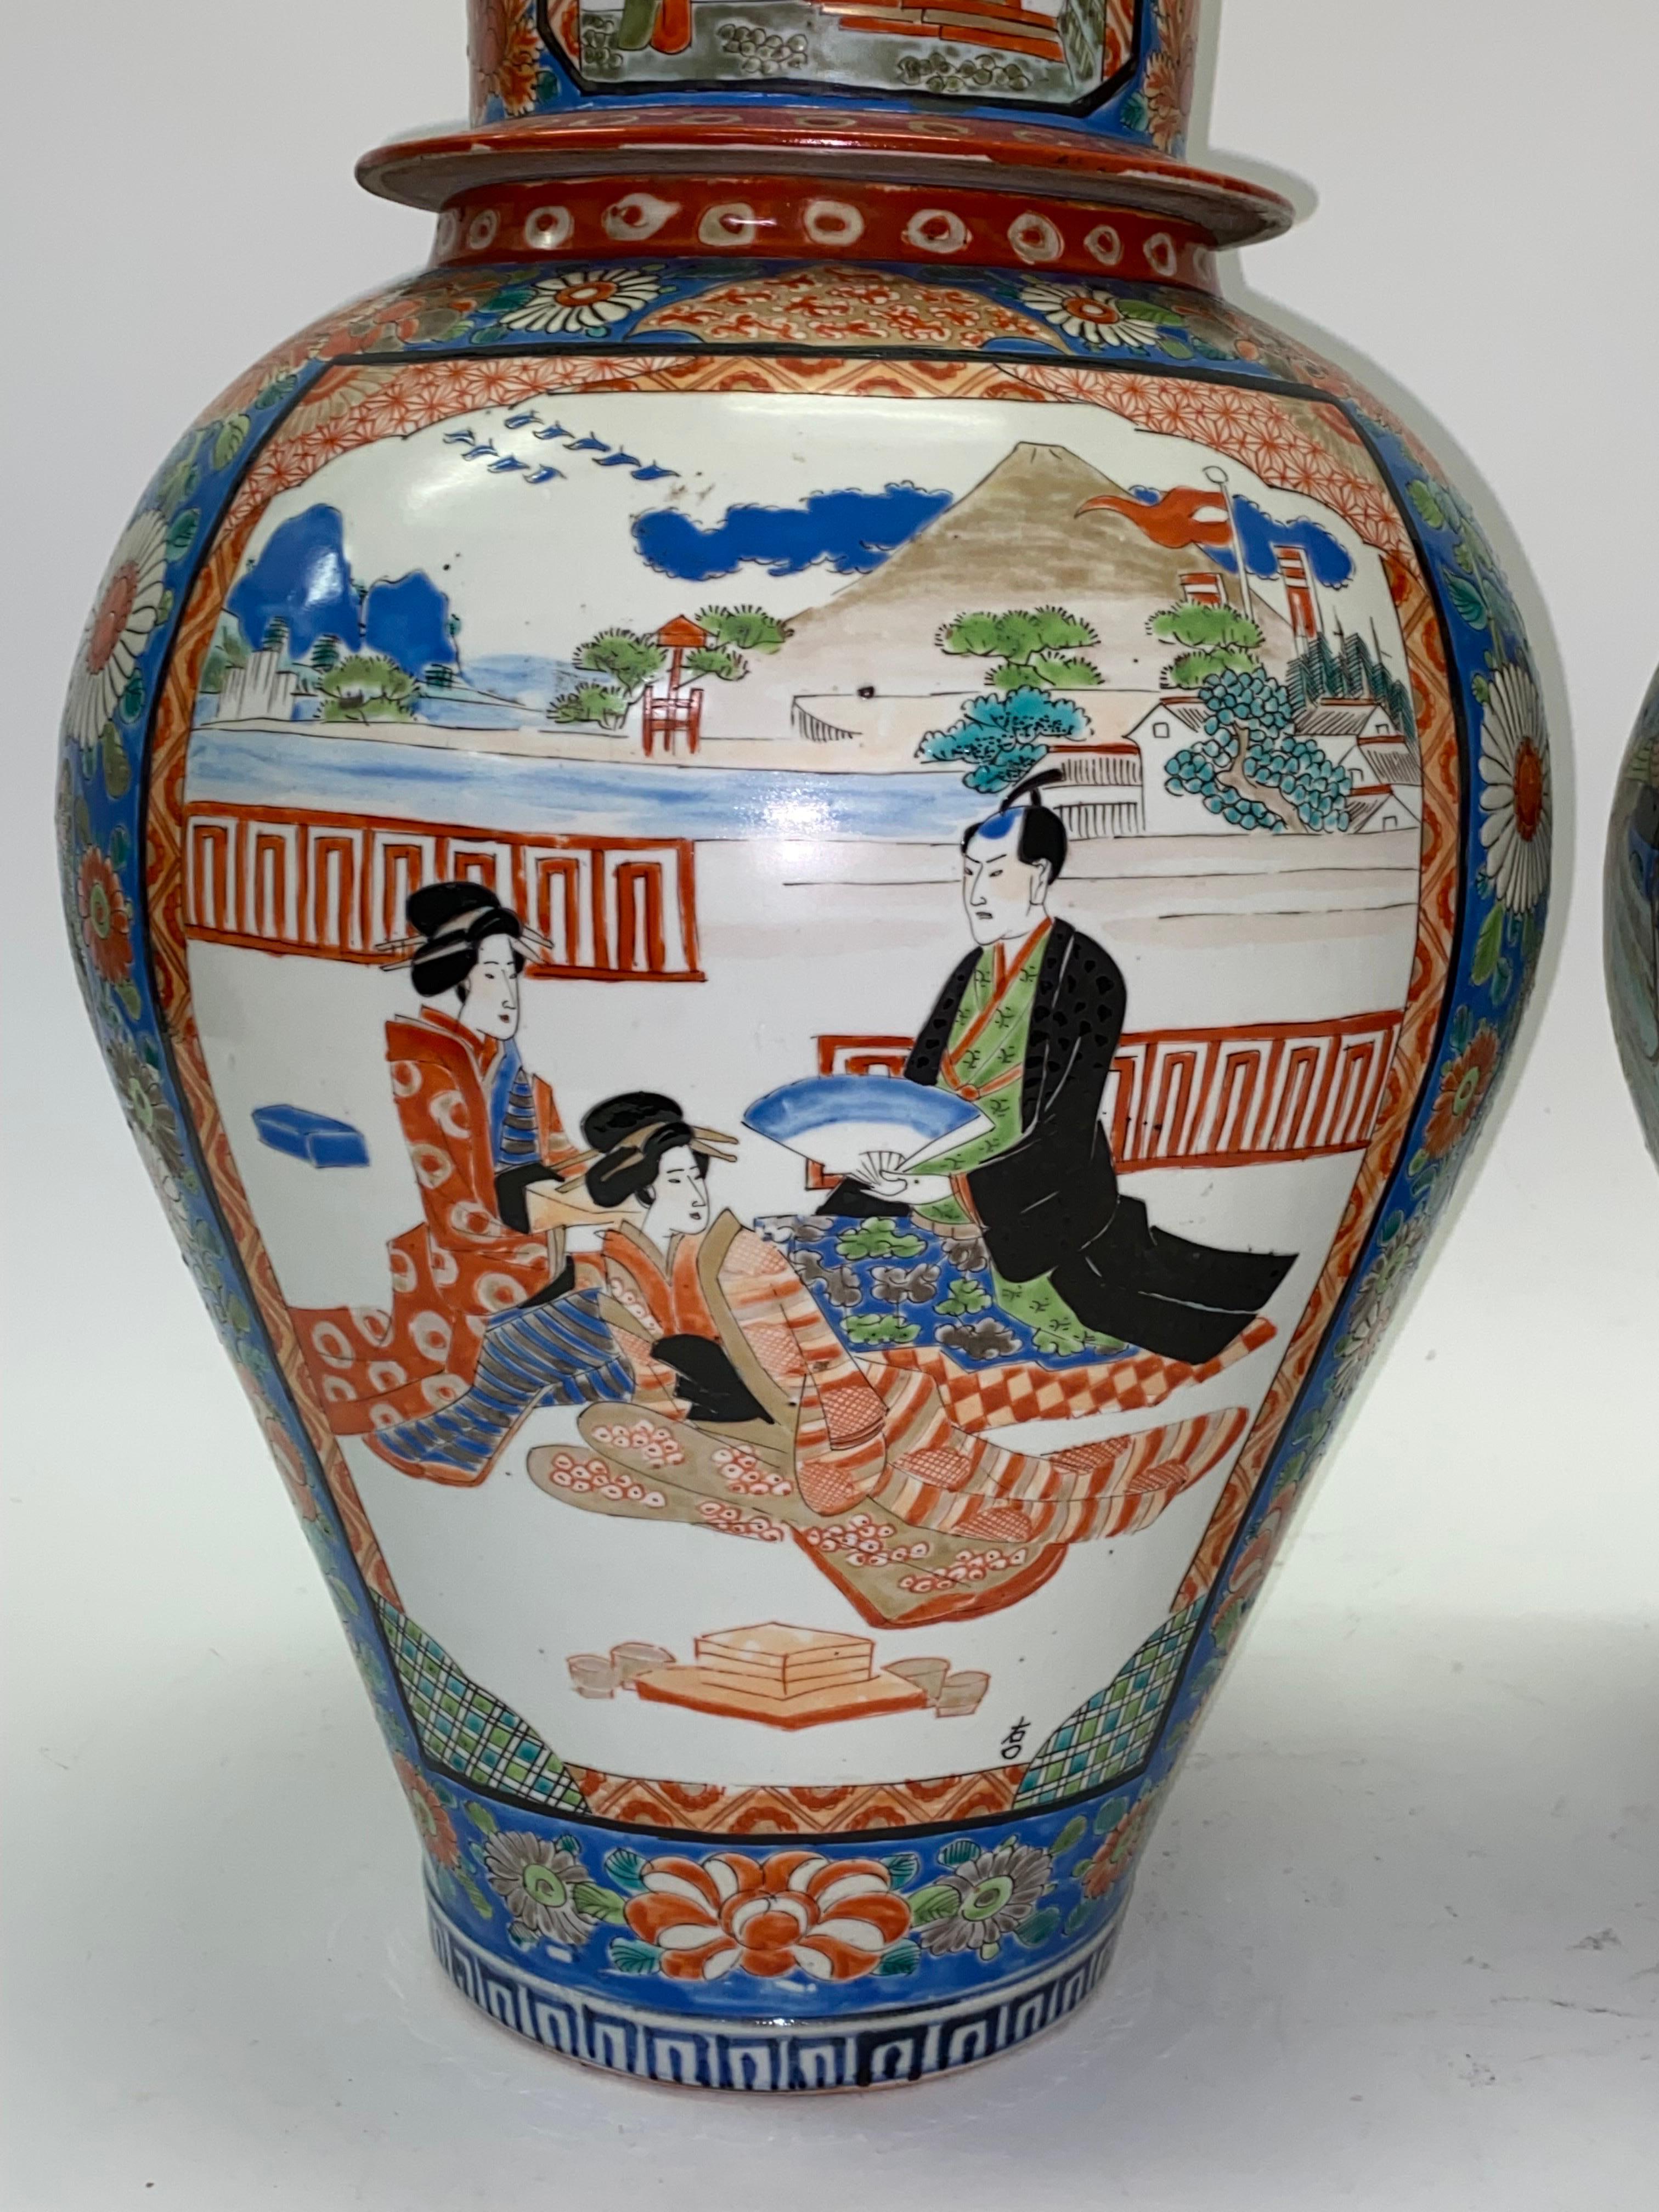 Paire de jarres à gingembre Imari japonaises de la seconde moitié du 19e siècle, de grande taille et en très bon état. Chacun d'eux a un diamètre de 12 pouces et une hauteur de 19 pouces. Les couleurs sont riches et les pièces sont impressionnantes.